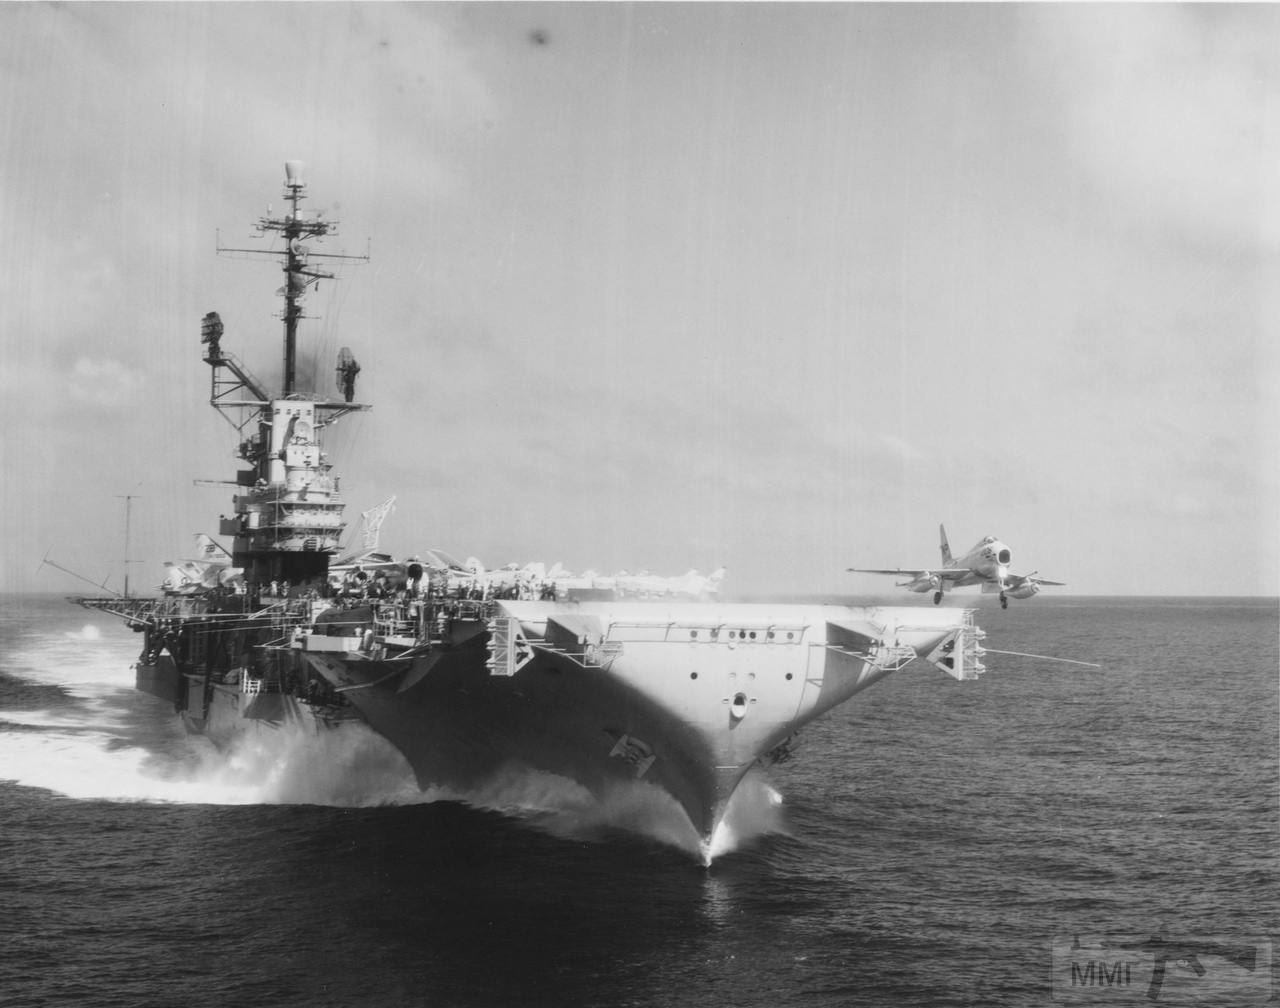 44965 - Взлет истребителя FJ-4B Fury с авианосца USS Lexington (CV-16), 11 апреля 1961 г.